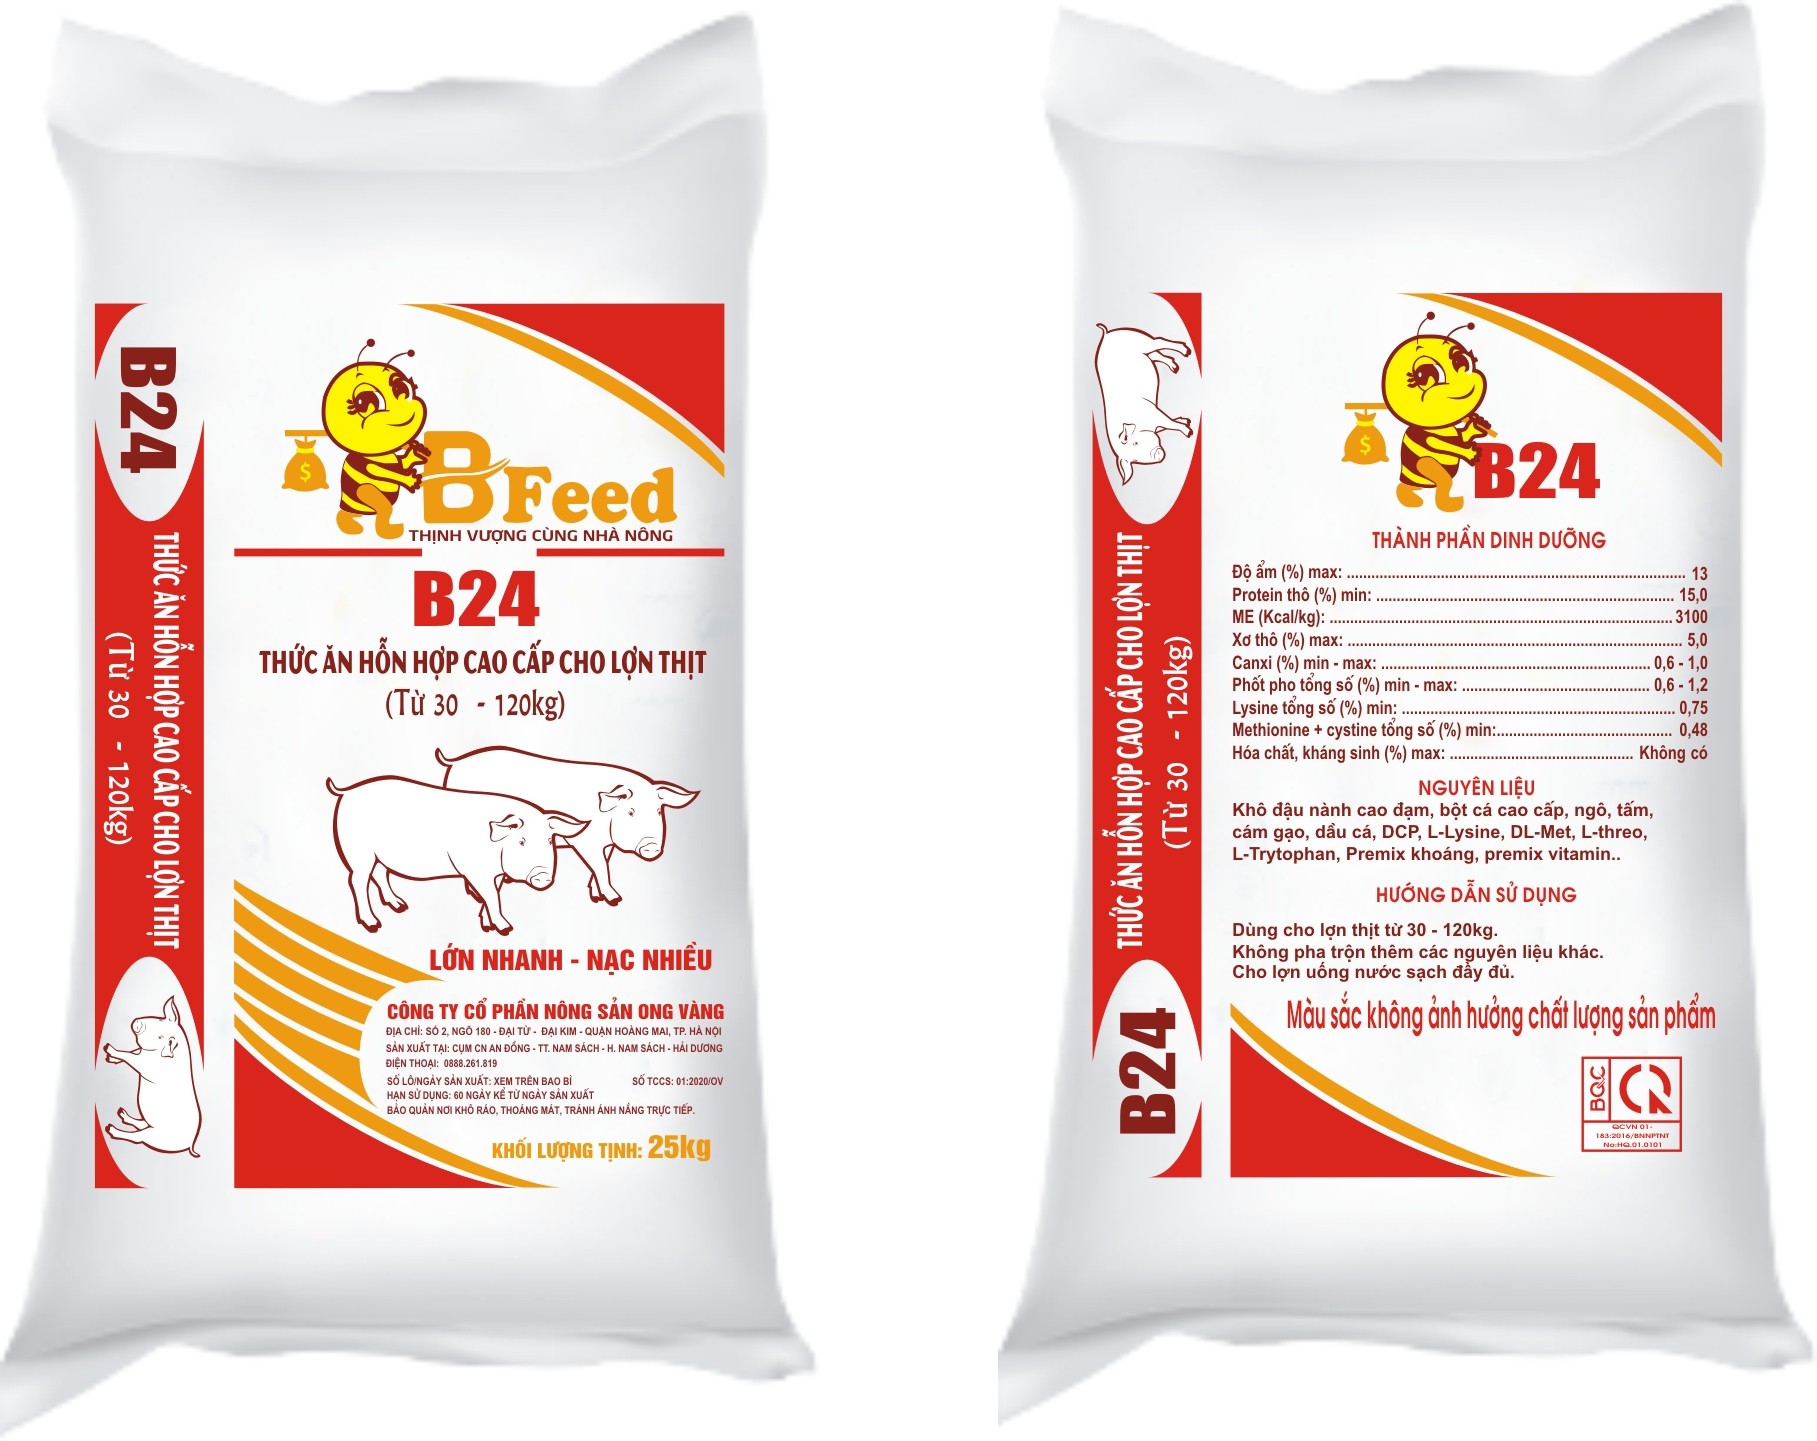 B24 - Thức ăn hỗn hợp cao cấp cho lợn thịt (Từ 30kg - 120kg)